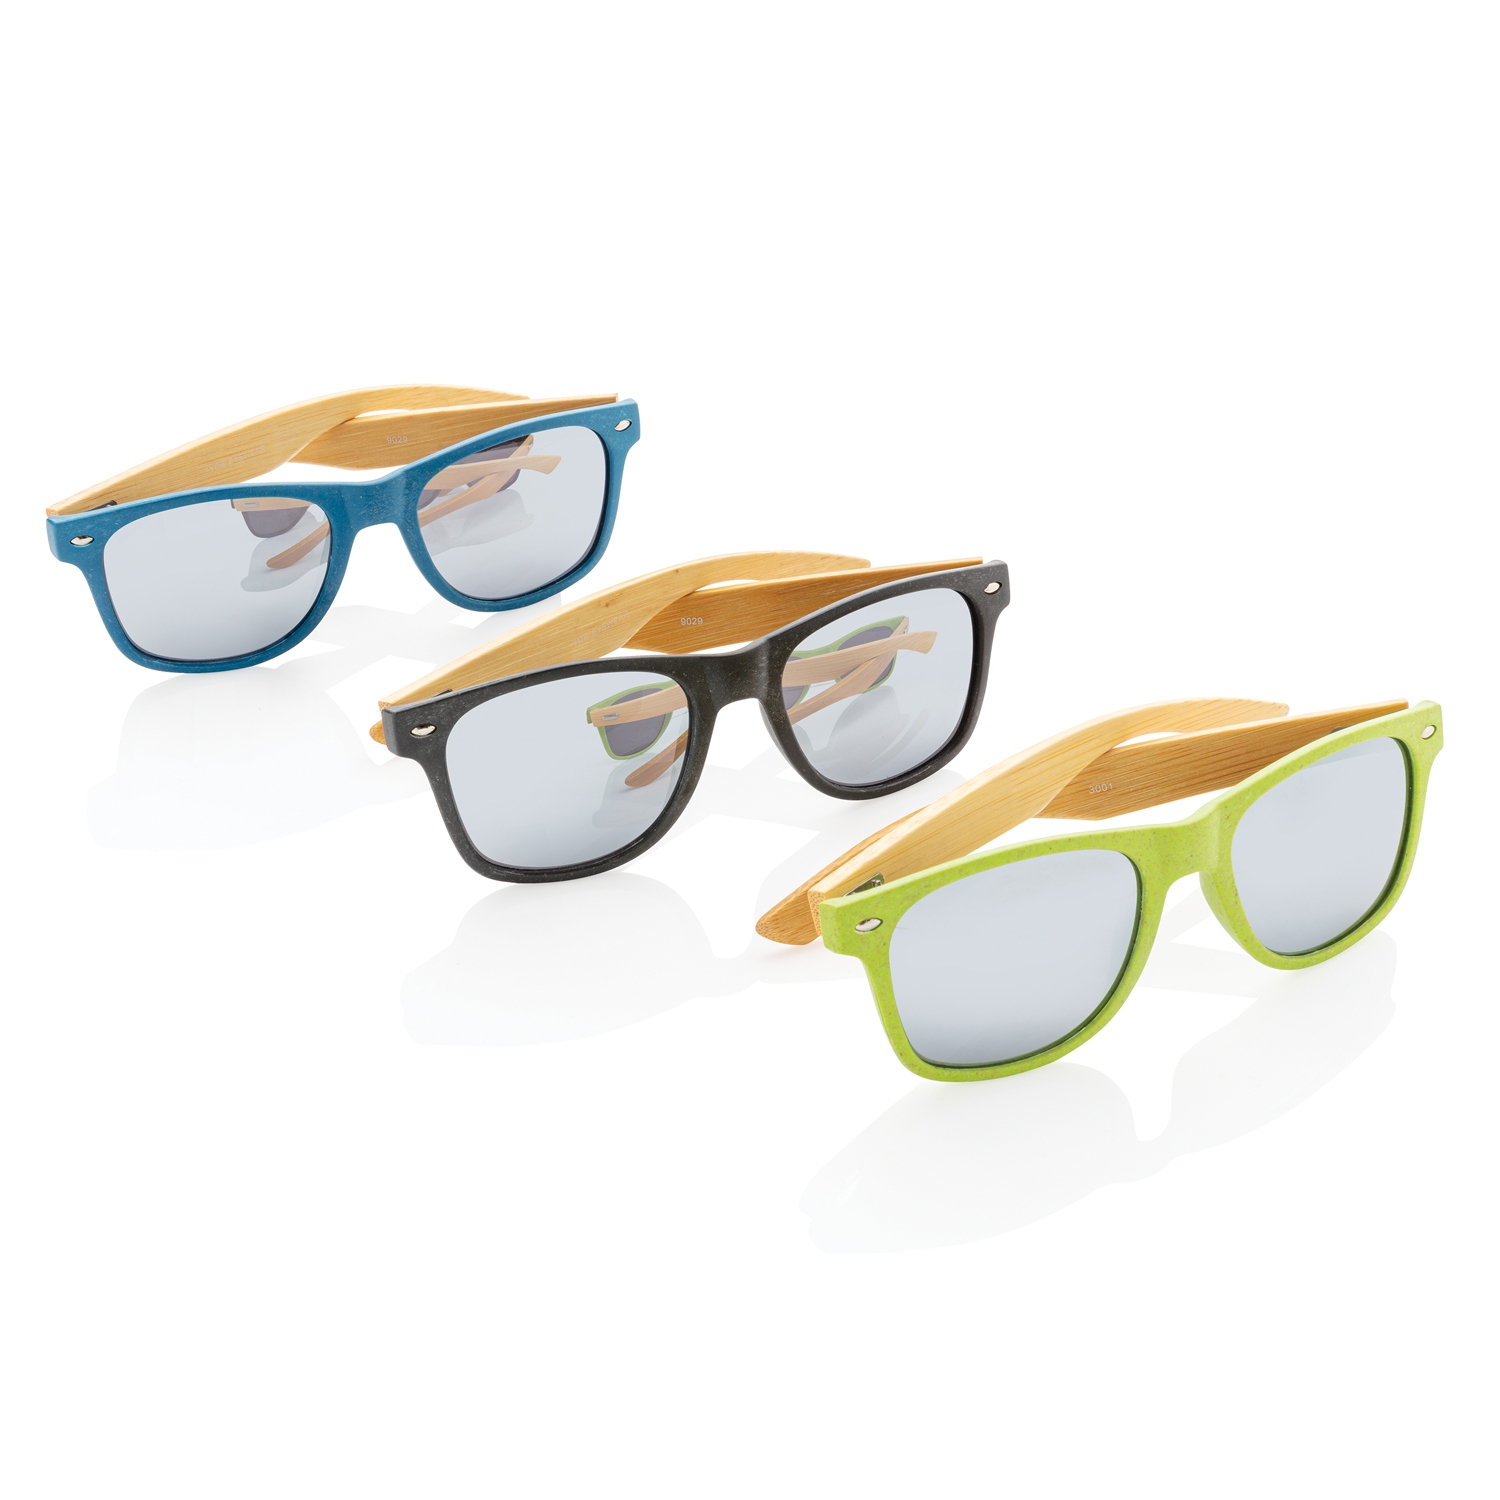 Солнцезащитные очки Wheat straw с бамбуковыми дужками, зеленый, бамбук; волокно пшеничной соломы